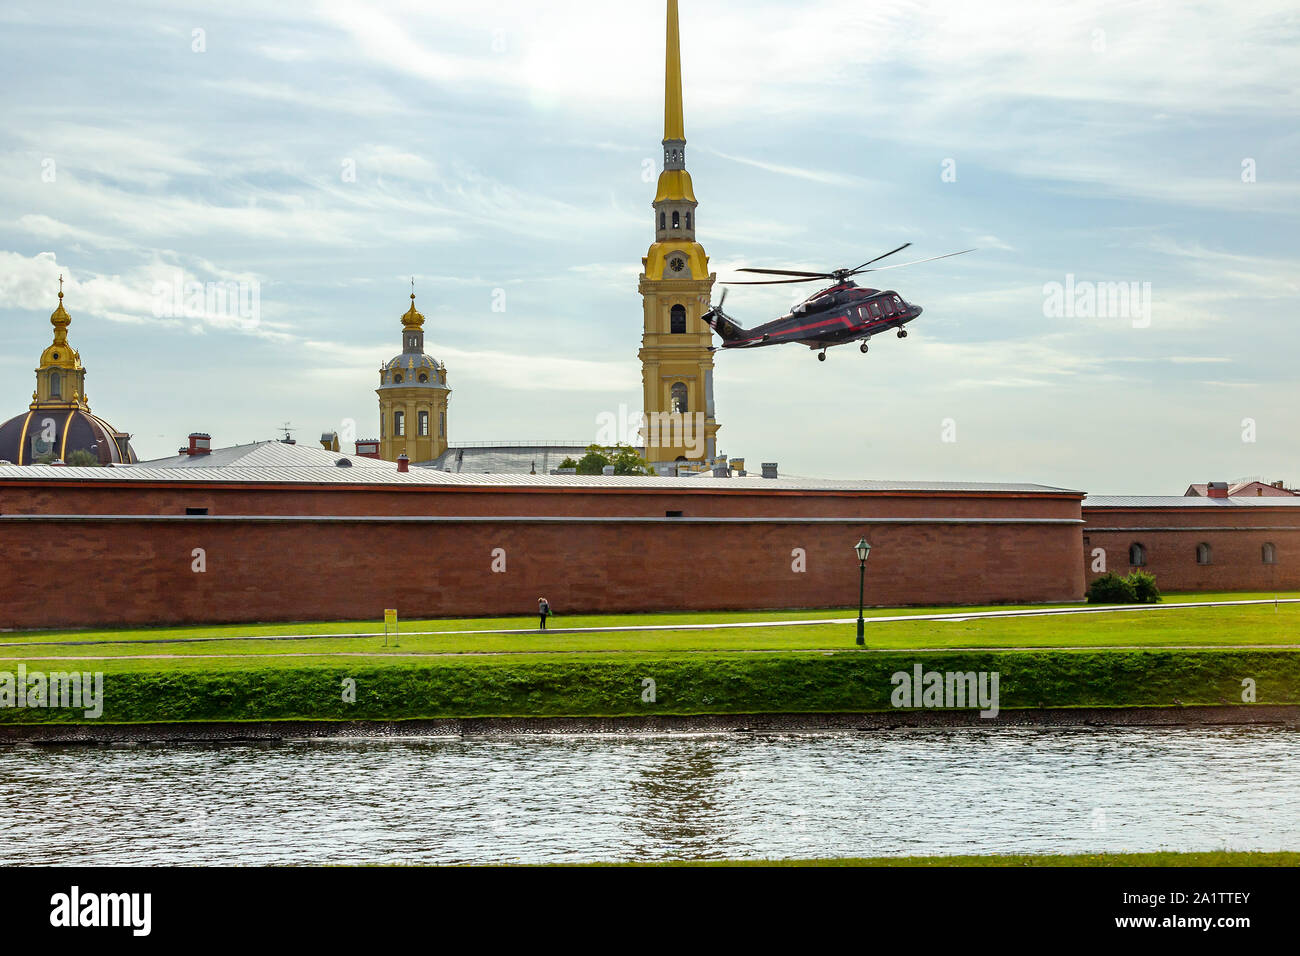 Ein Hubschrauber Landung in St. Peter und Paul Festung aus kronverkskaya Naberezhnaya getroffen, in St. Petersburg, Russland. Stockfoto